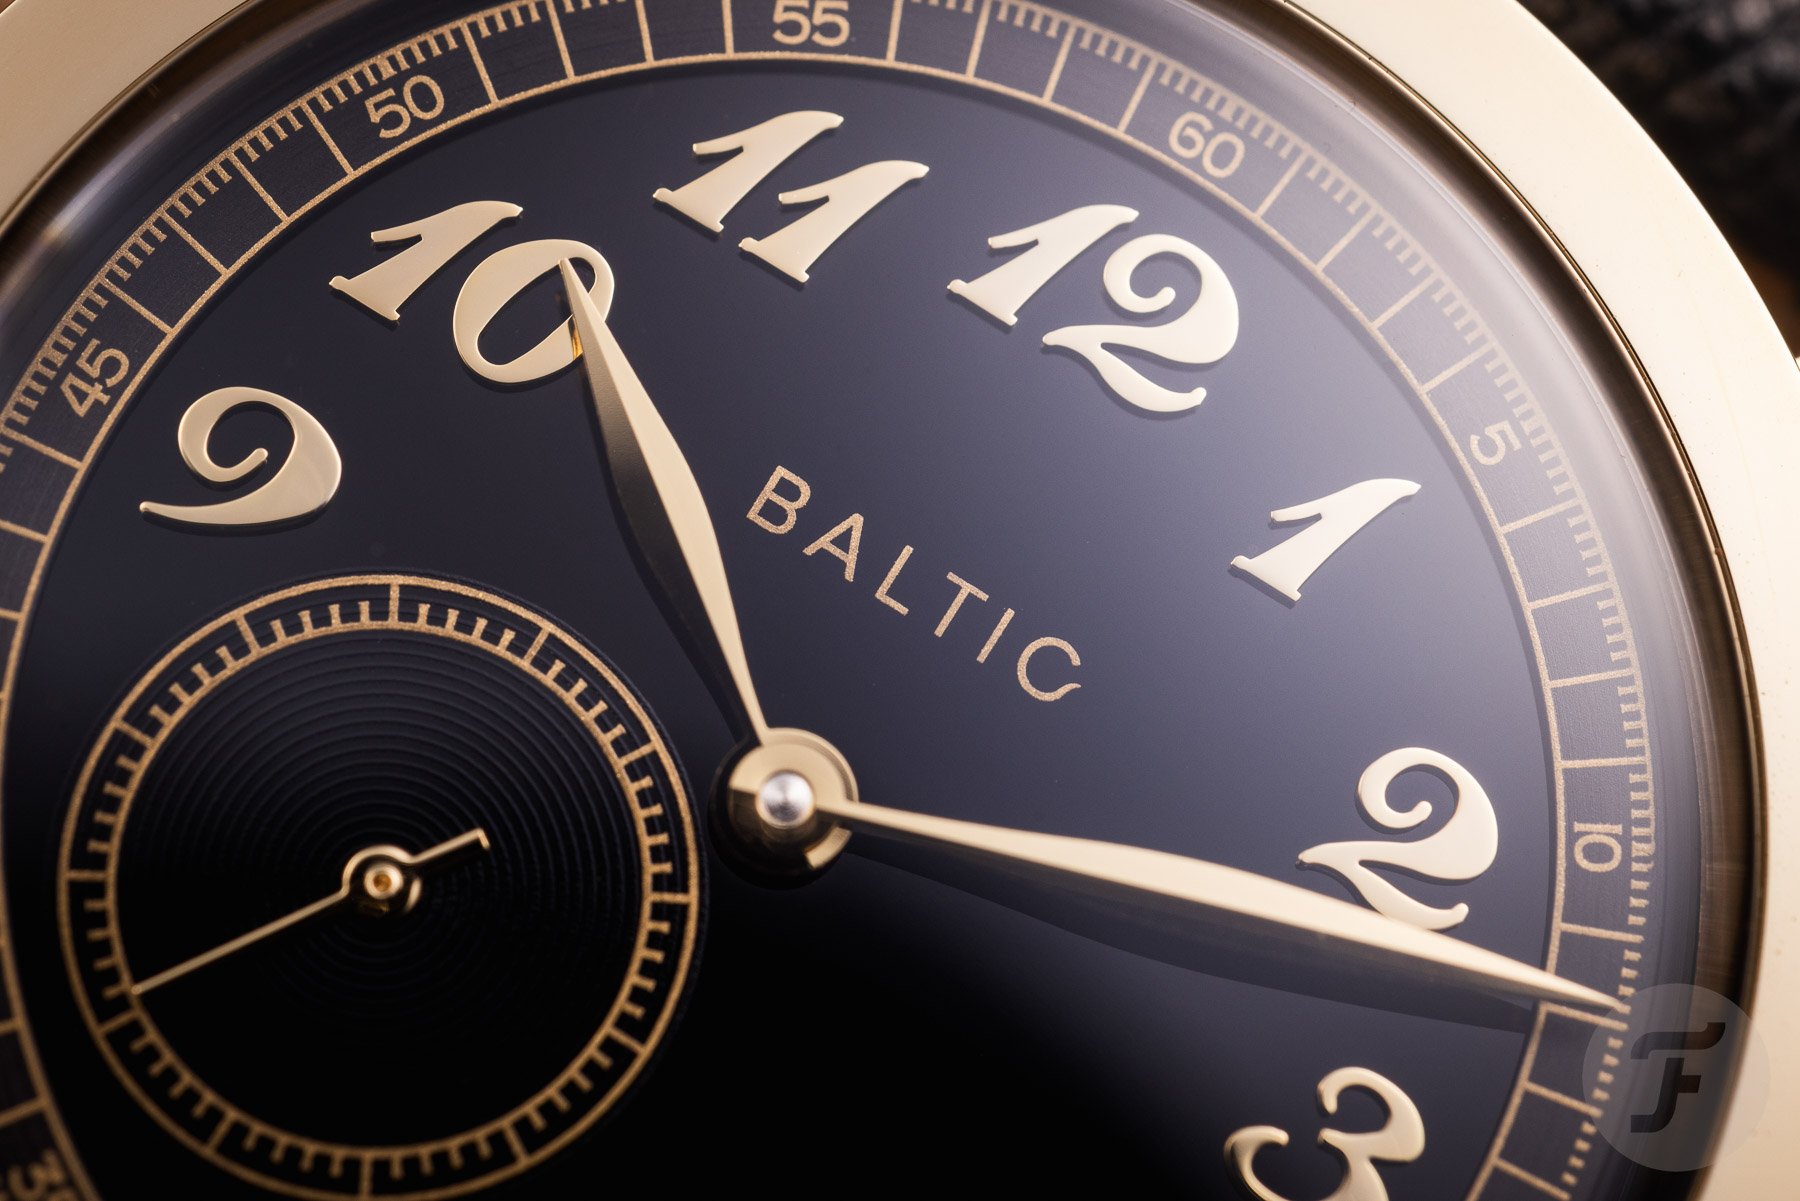 Открываем потенциал Baltic MR01, HMS 002 и Bicompax 002 Gold PVD